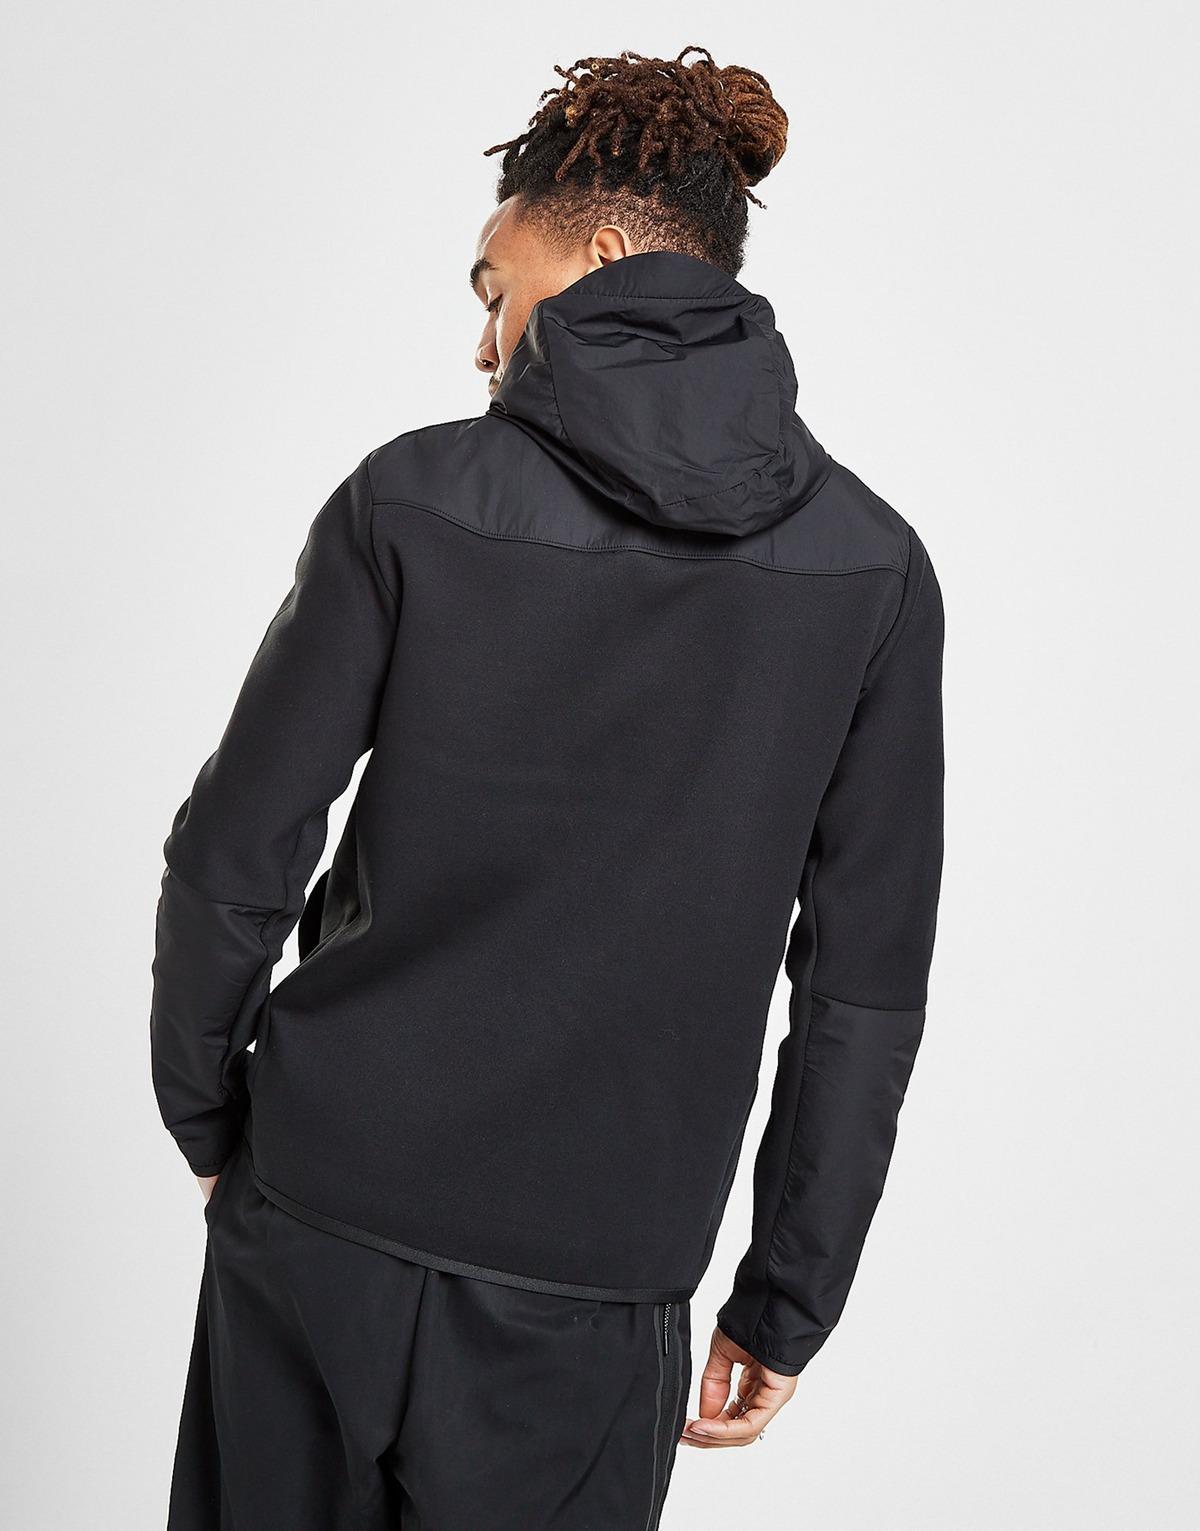 Nike Fleece Tech Woven Hoodie in Black for Men - Lyst